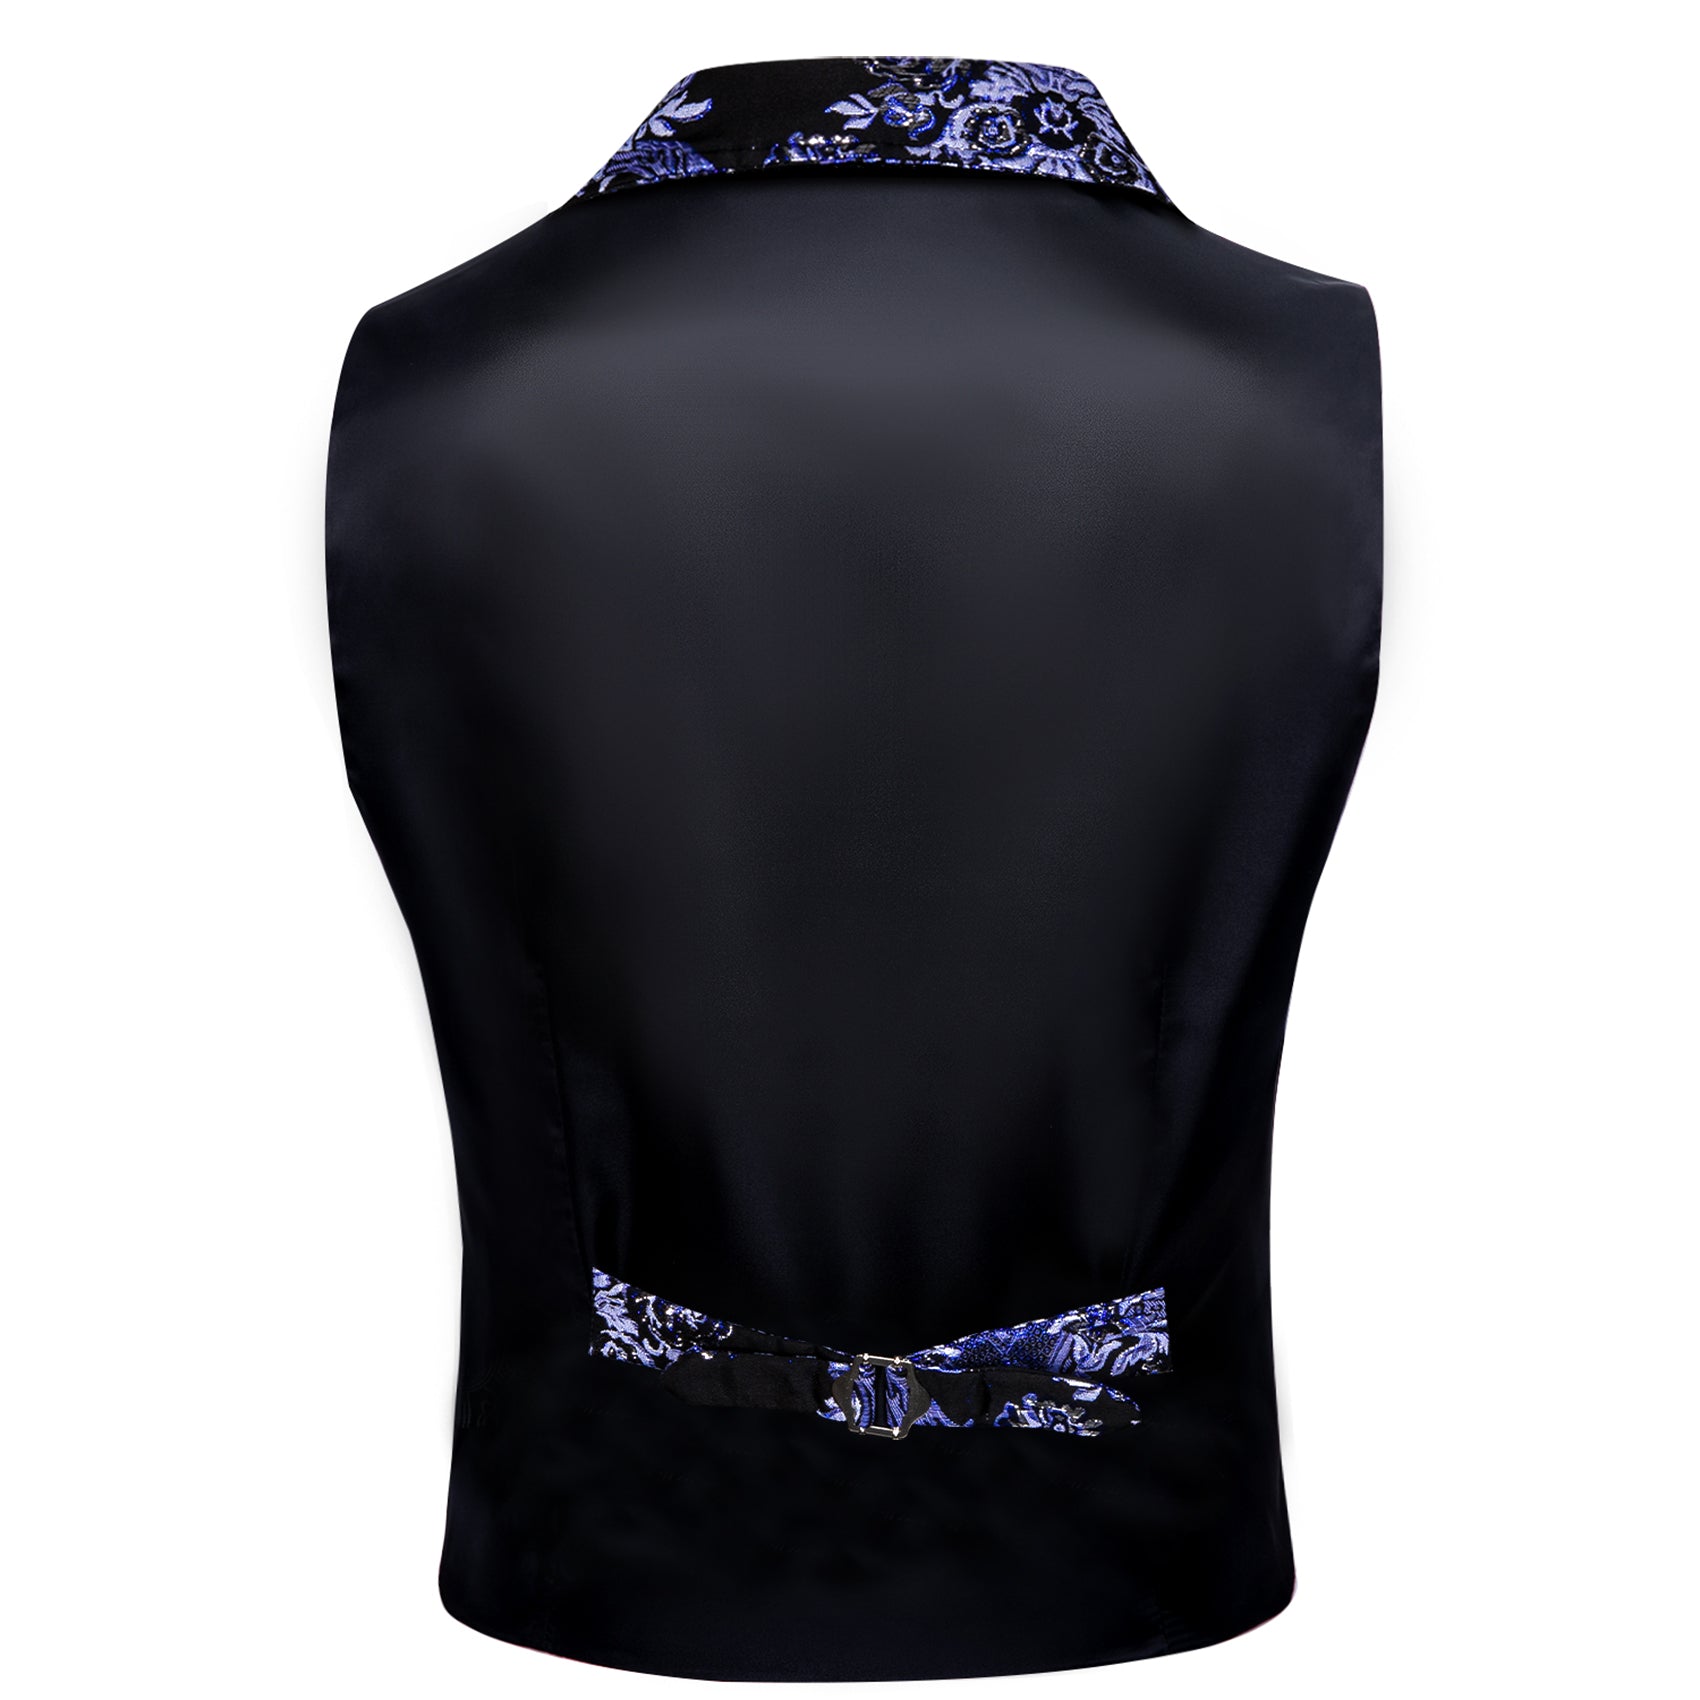 Barry.wang Men's Vest White Purple Black Jacquard Floral Silk Waistcoat Vest